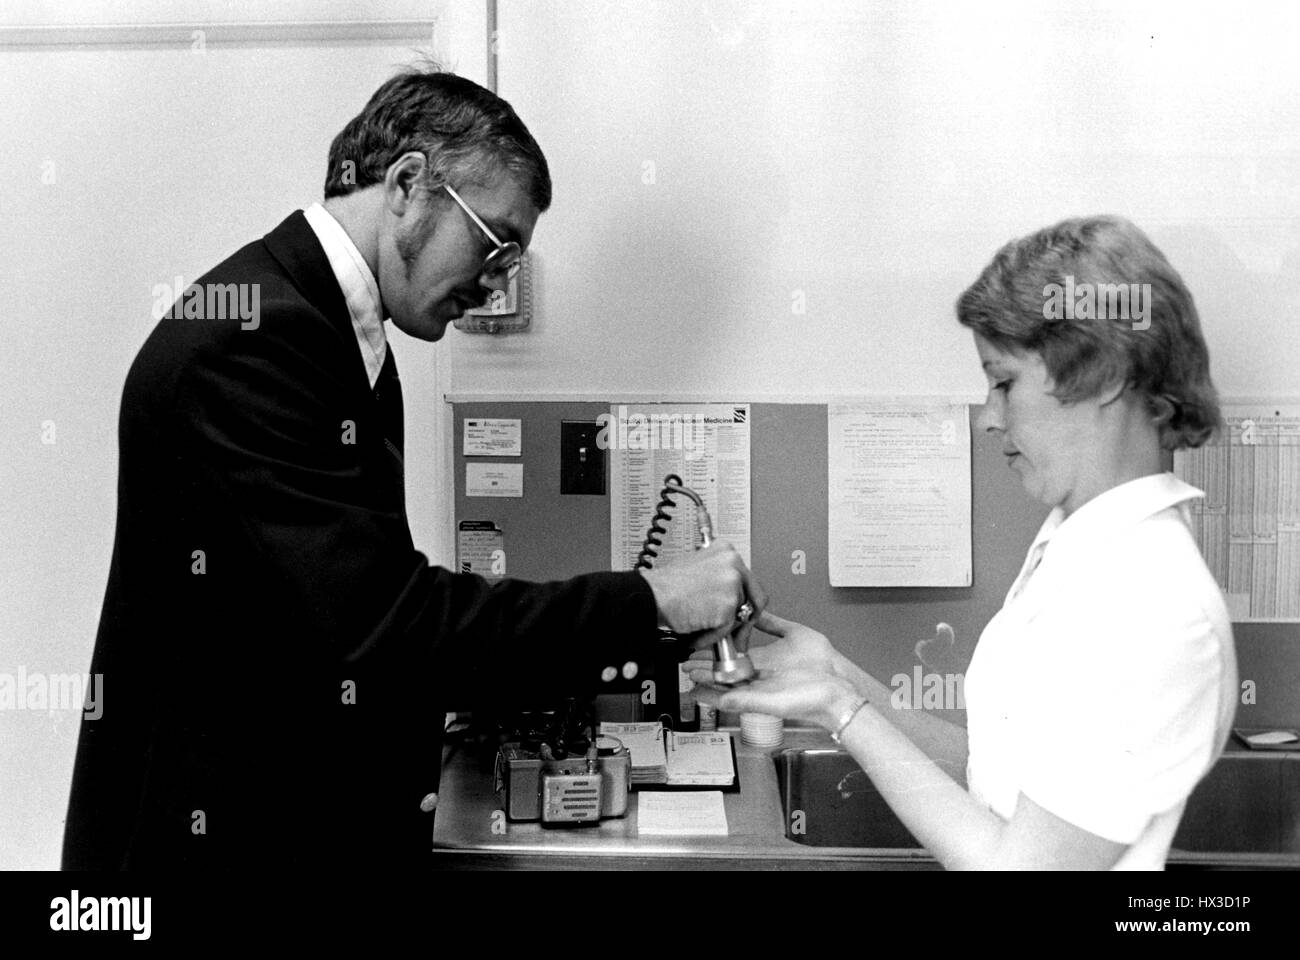 Inspekteur des Atomic Energy Commission untersucht die Hände der Nuklearmedizin Techniker für radioaktive Kontamination, 1975. Bild mit freundlicher Genehmigung US Department of Energy. Stockfoto